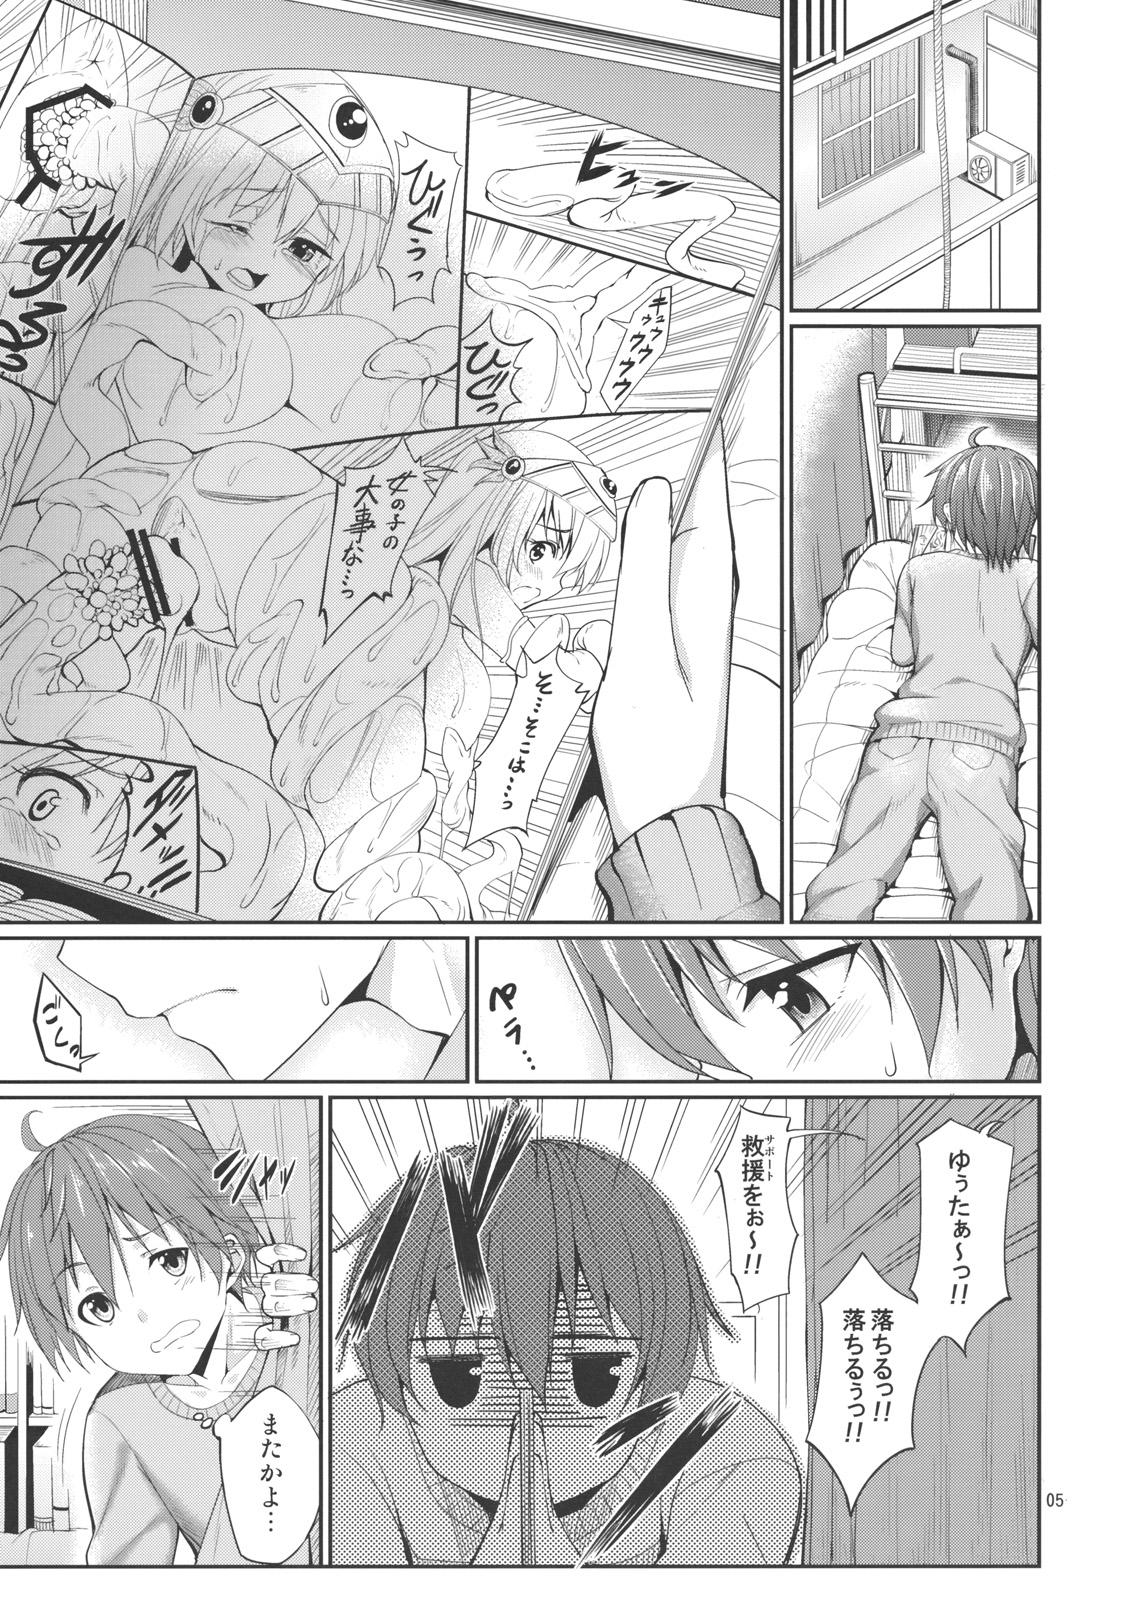 Petite Rikka to Shokushu to Mousou Settei! - Chuunibyou demo koi ga shitai Teenporno - Page 4